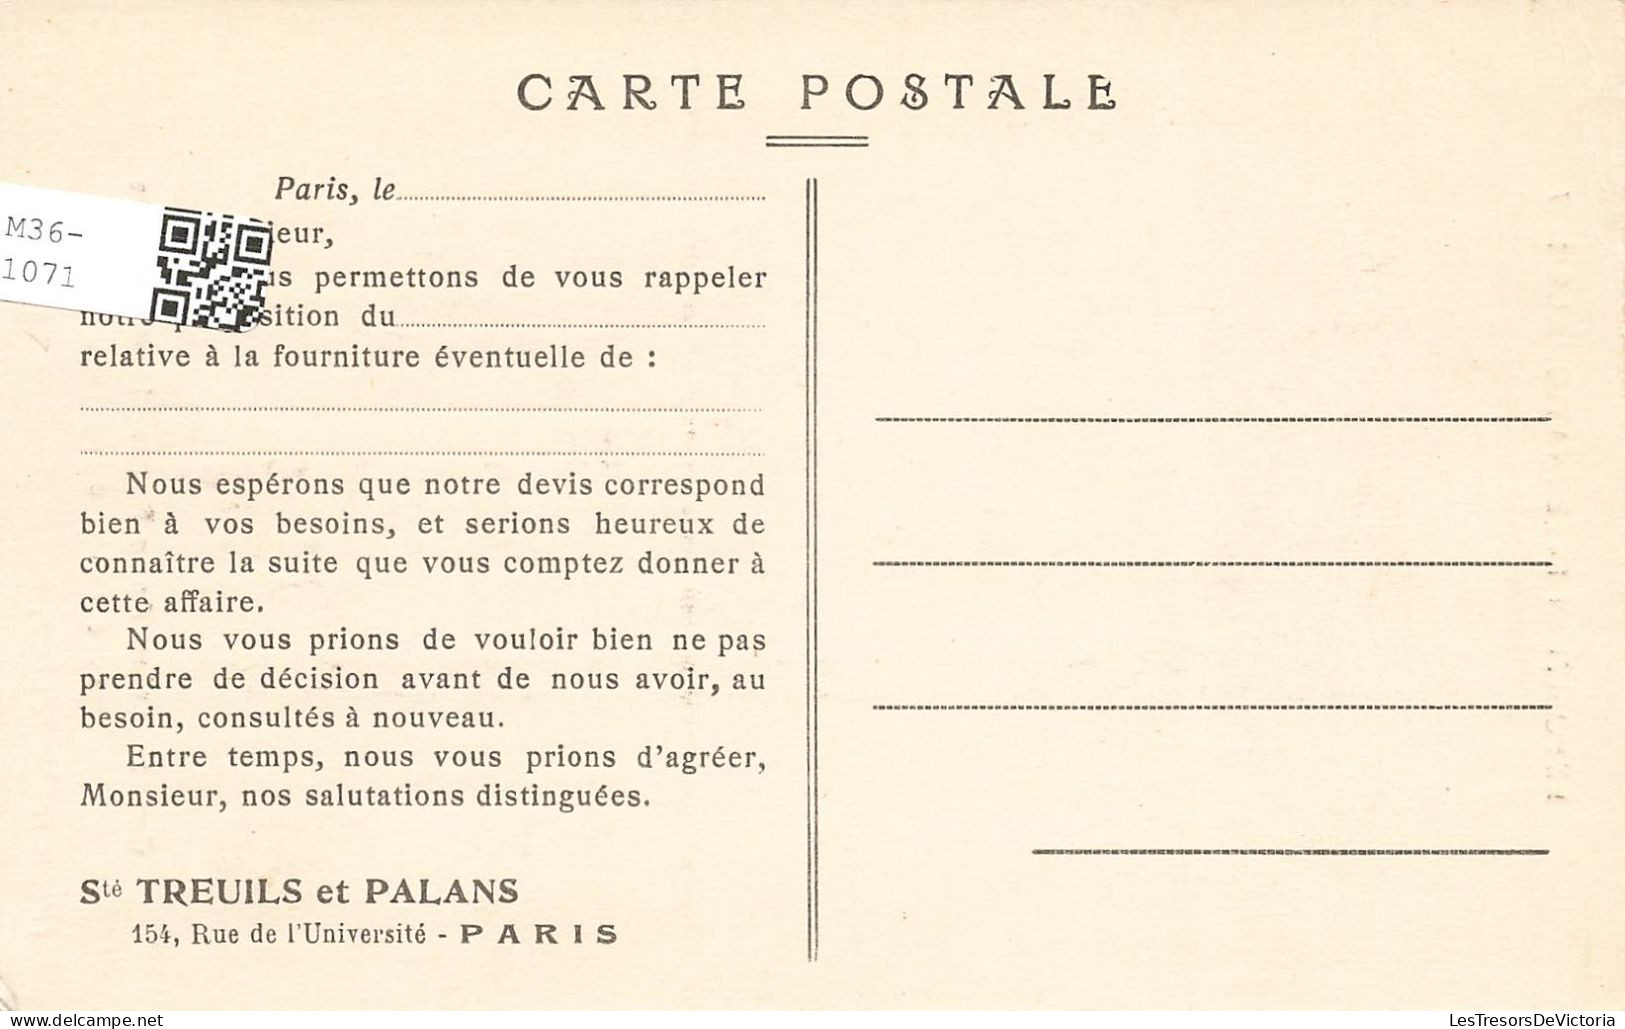 ARCHITECTURE - Exposition Internationale 1937 - Construction De La Porte Monumentale ... -  Carte Postale Ancienne - Bridges